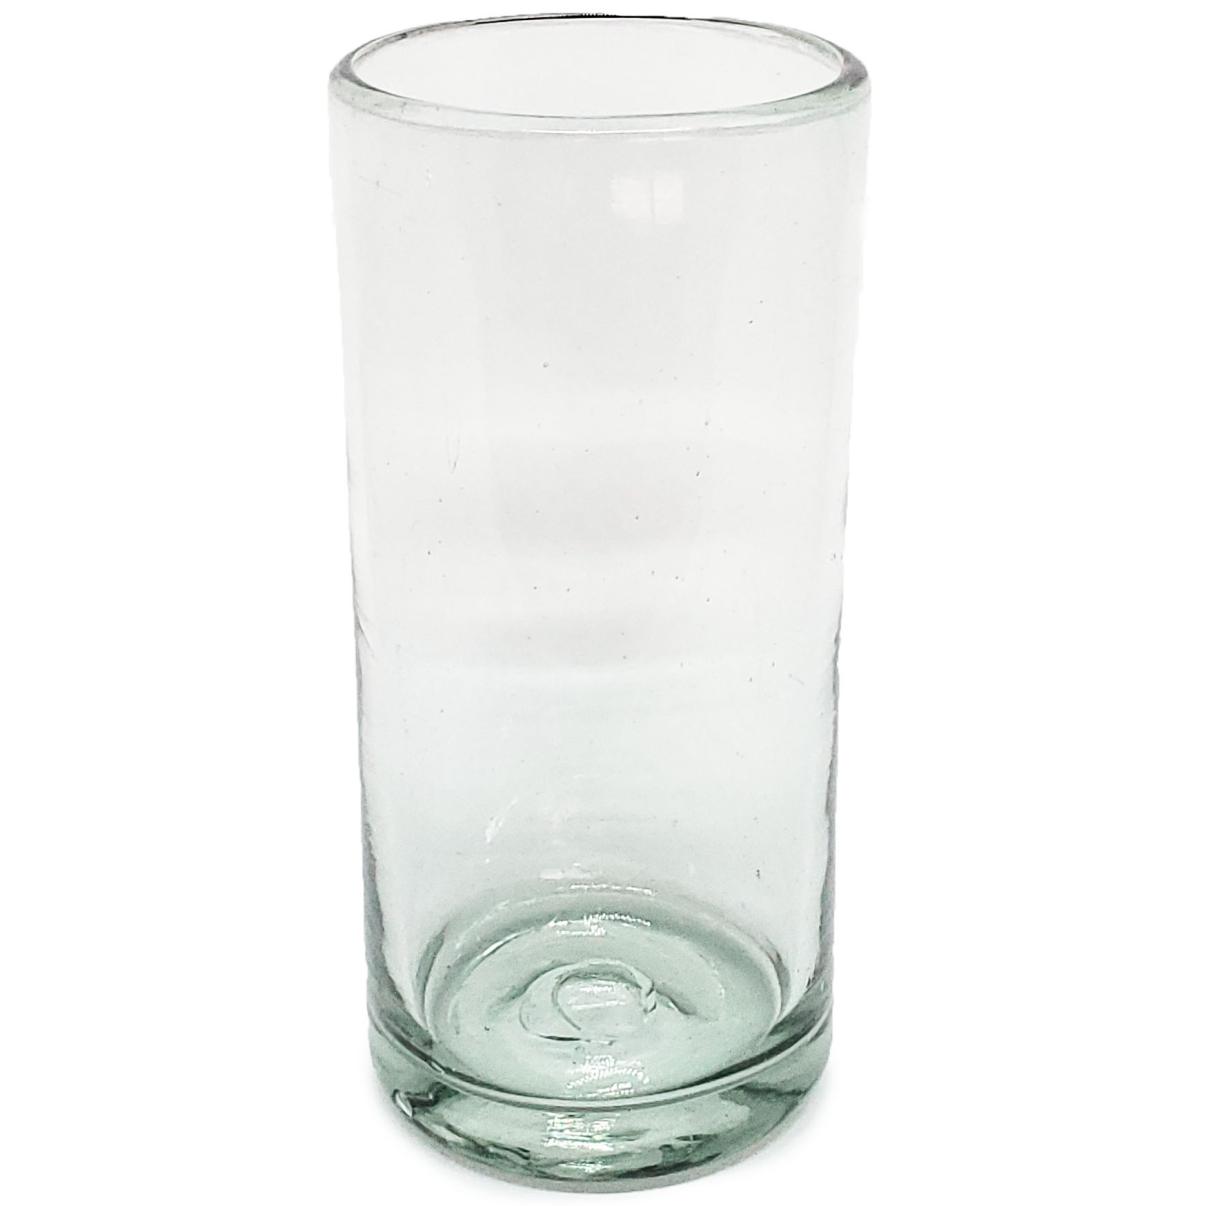 Ofertas / Juego de 6 vasos Jumbo transparentes, 20 oz, Vidrio Reciclado, Libre de Plomo y Toxinas / ste clsico juego de vasos jumbo est hecho con vidrio reciclado. Contiene pequeas burbujas atrapadas en el vaso.